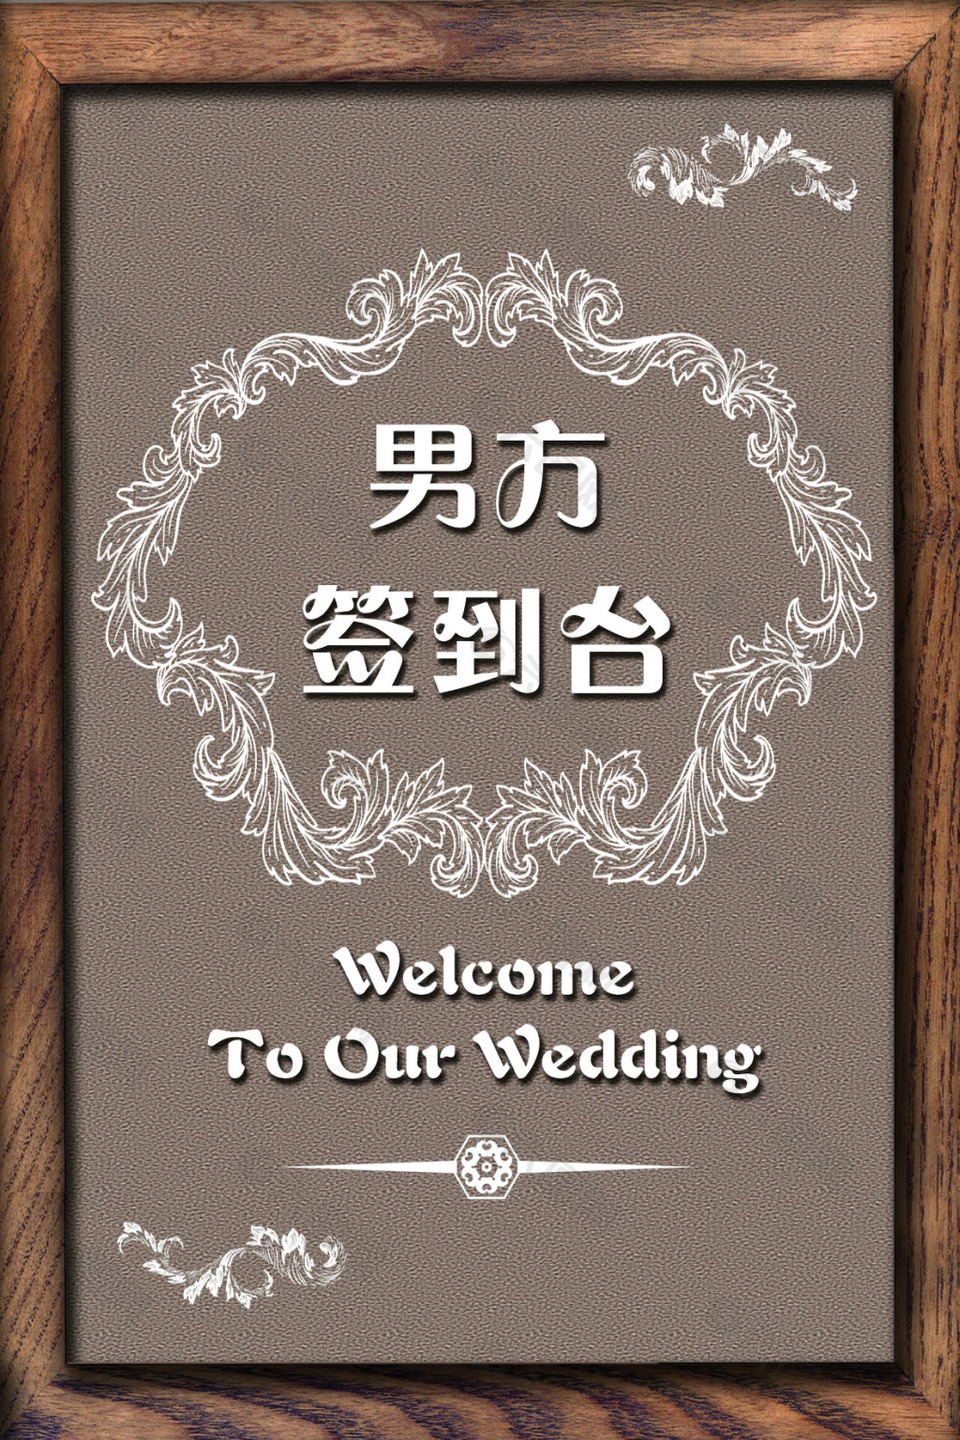 复古棕色木头相框欧式花纹婚礼签到牌